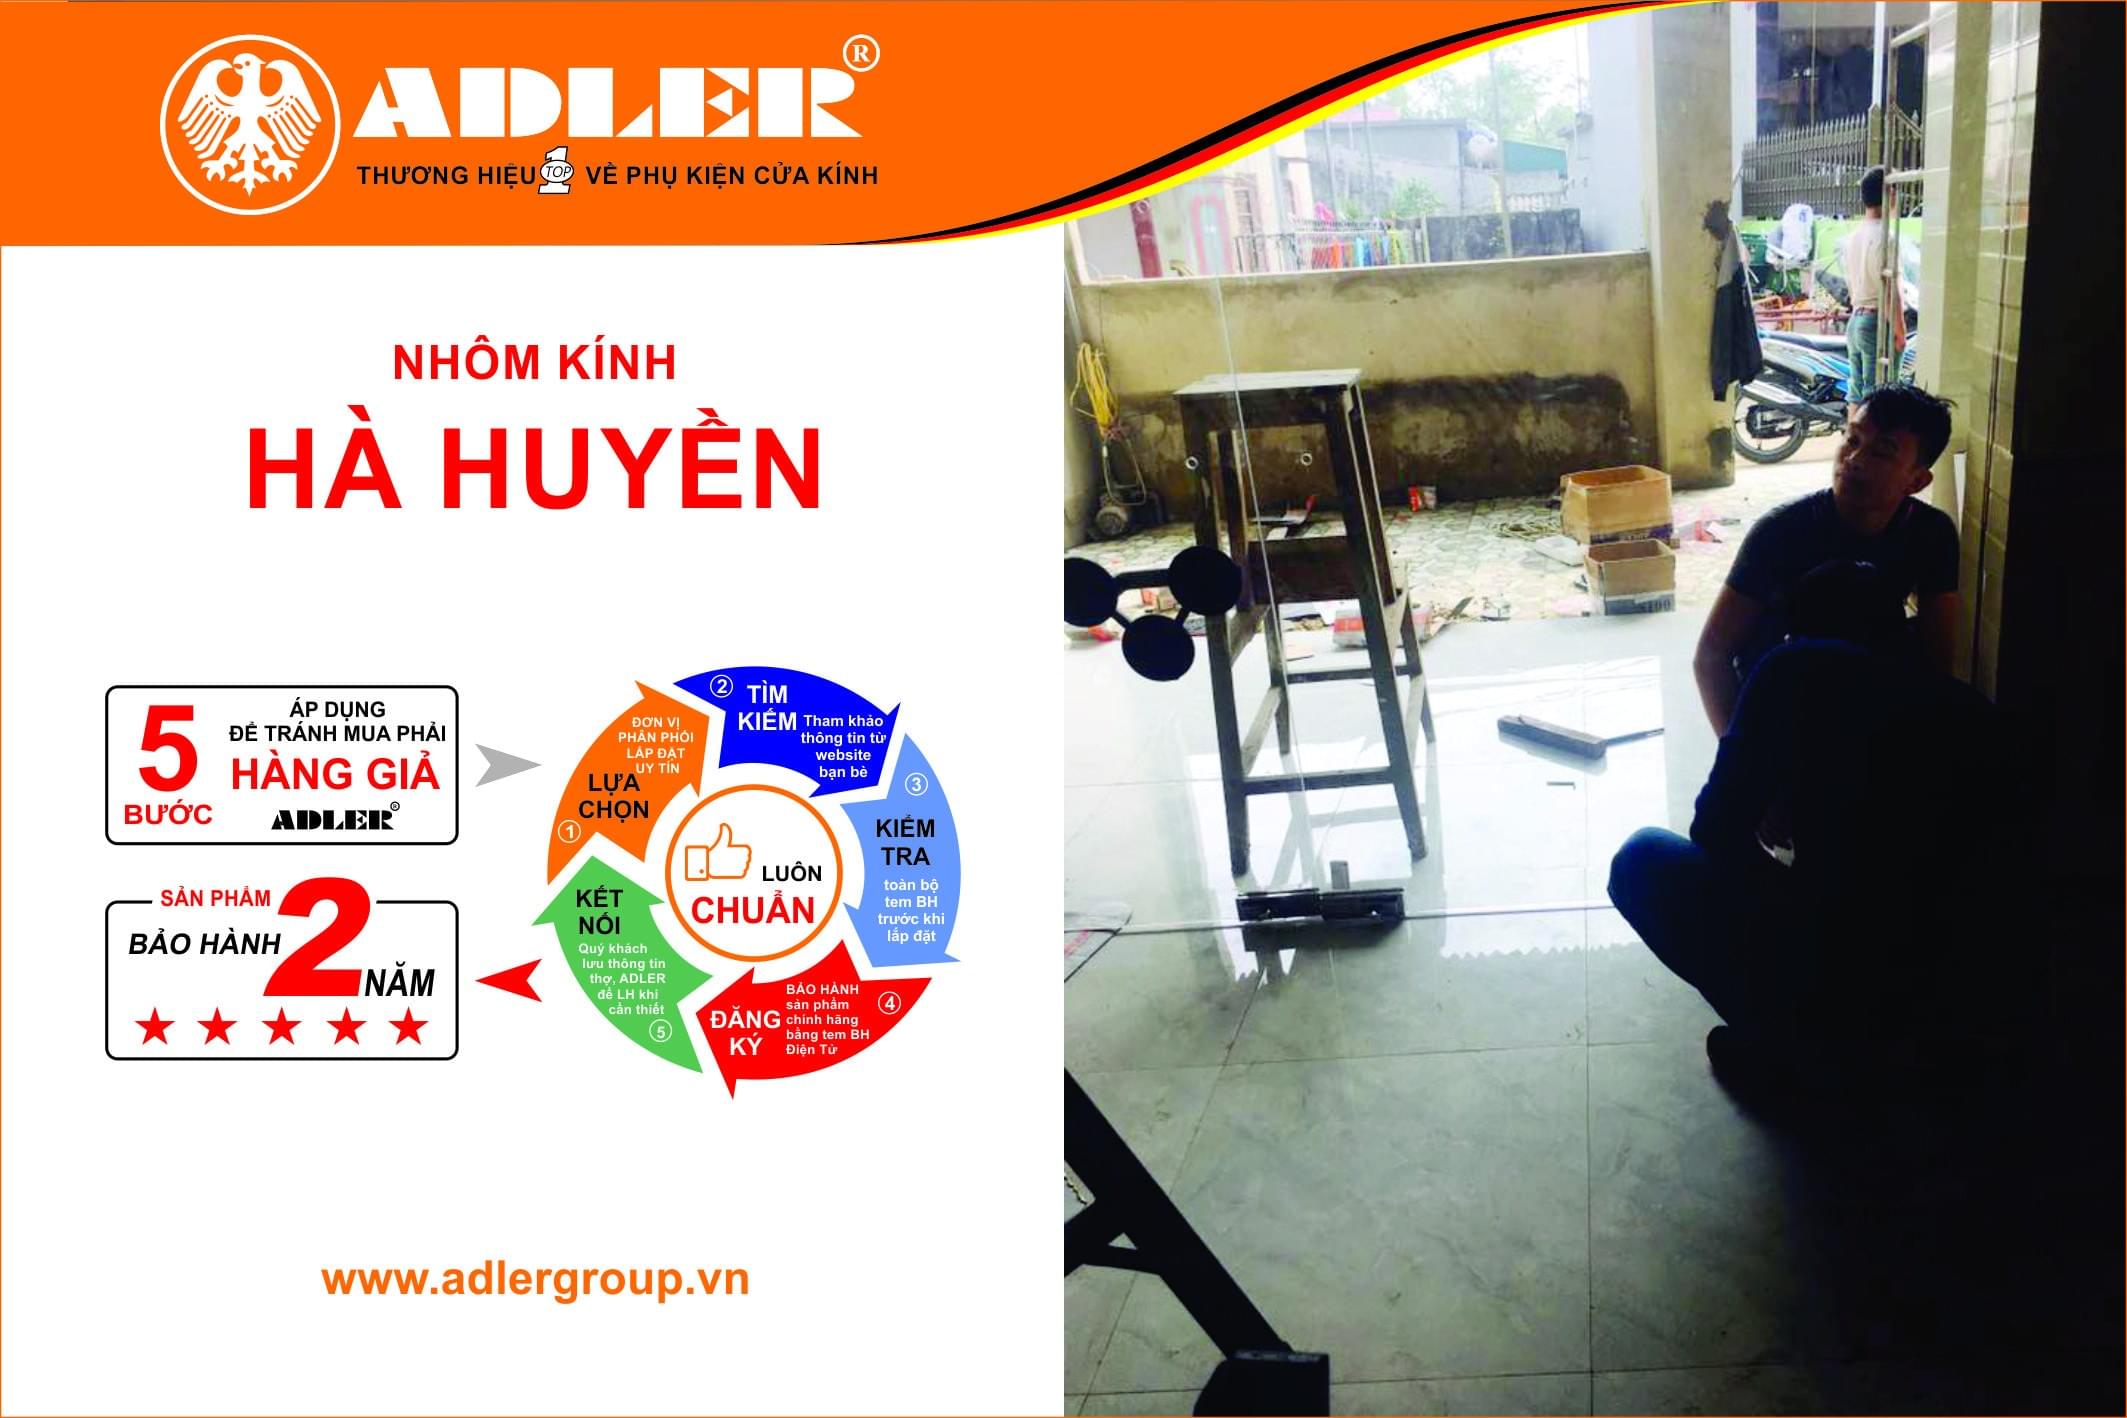 Hà Huyền- Đơn vị lắp đặt sản phẩm Adler uy tín ở Thanh Hóa.